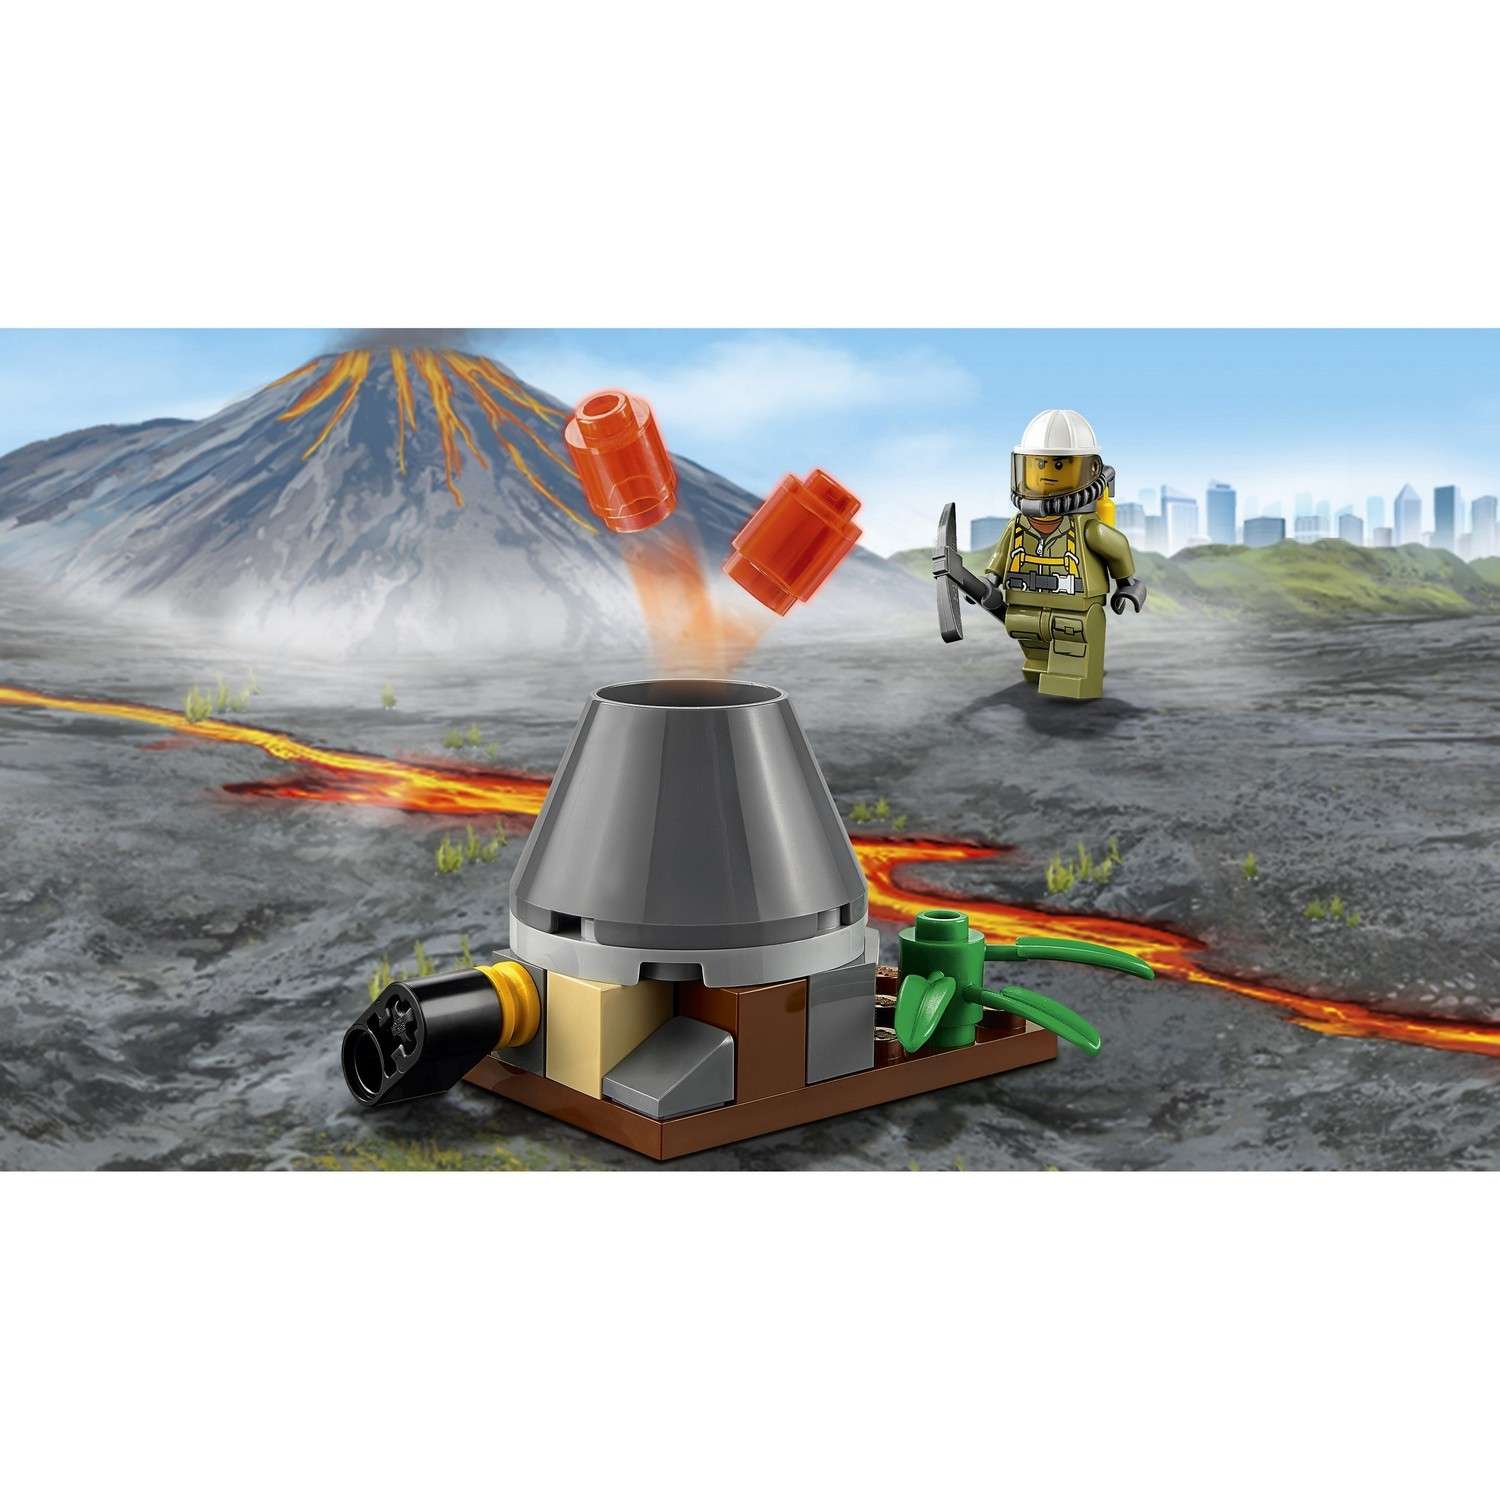 Конструктор LEGO City Volcano Explorers Набор для начинающих "Исследователи Вулканов" (60120) - фото 7